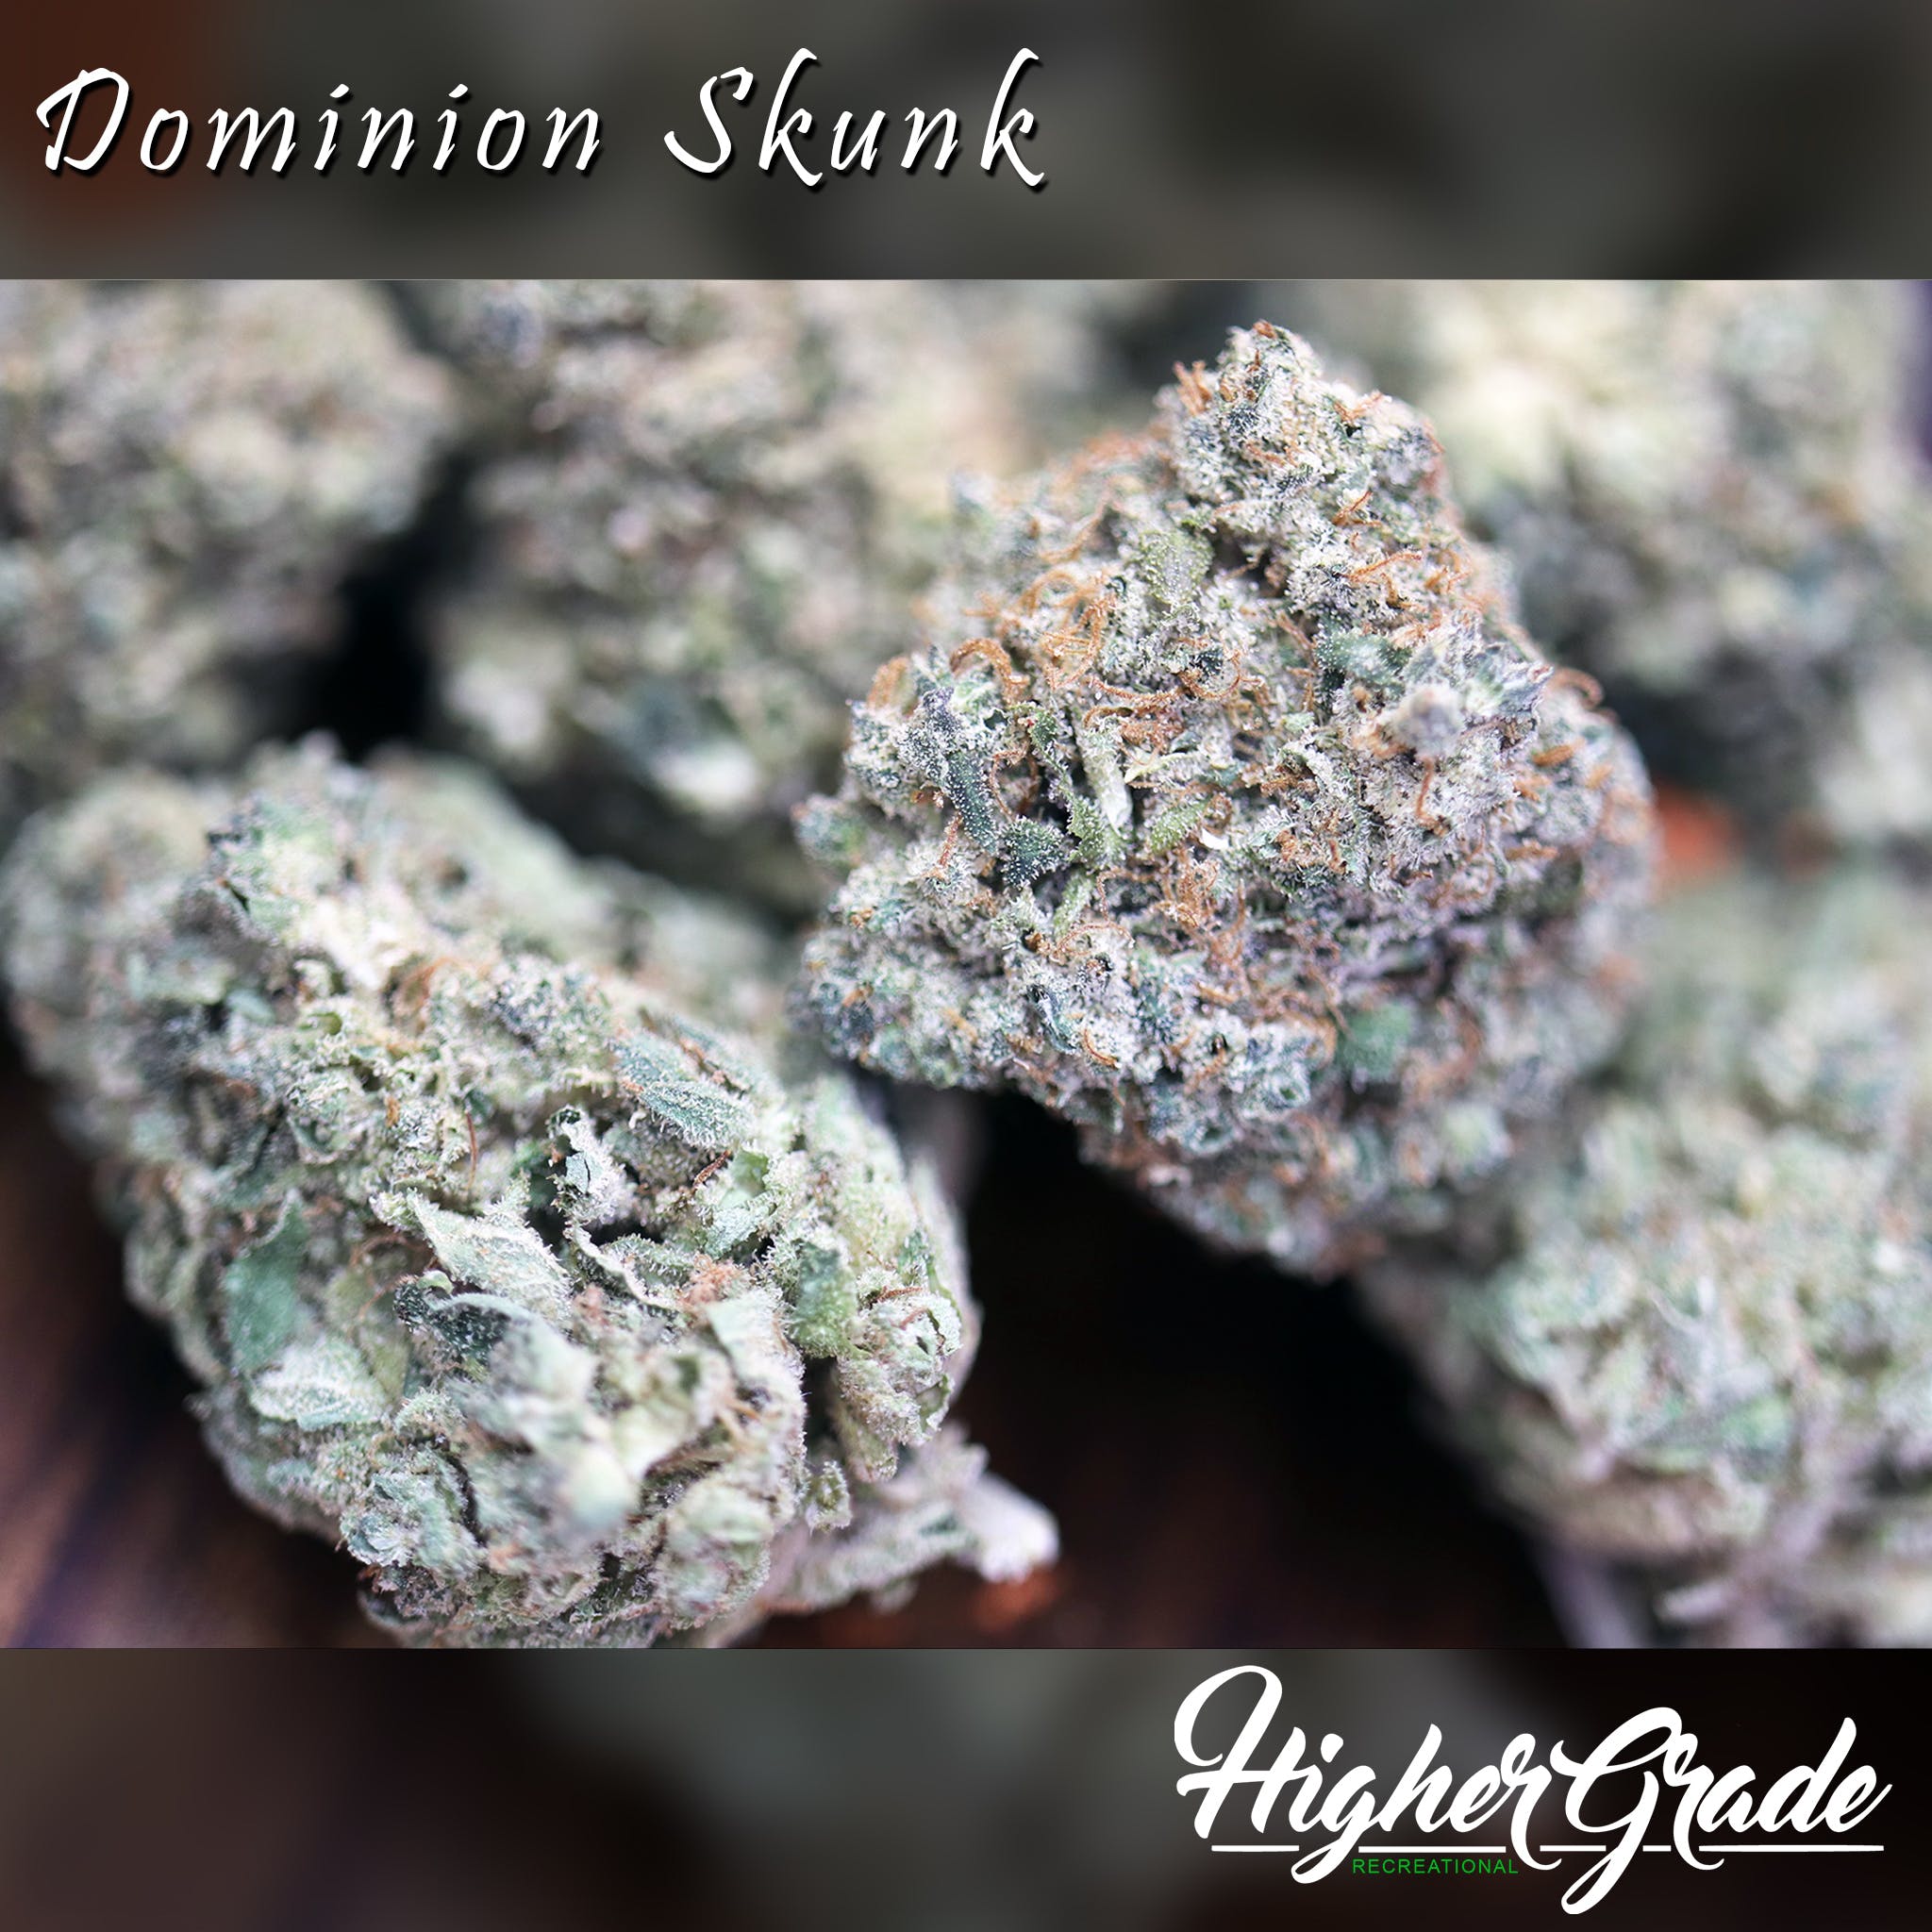 Dominion Skunk